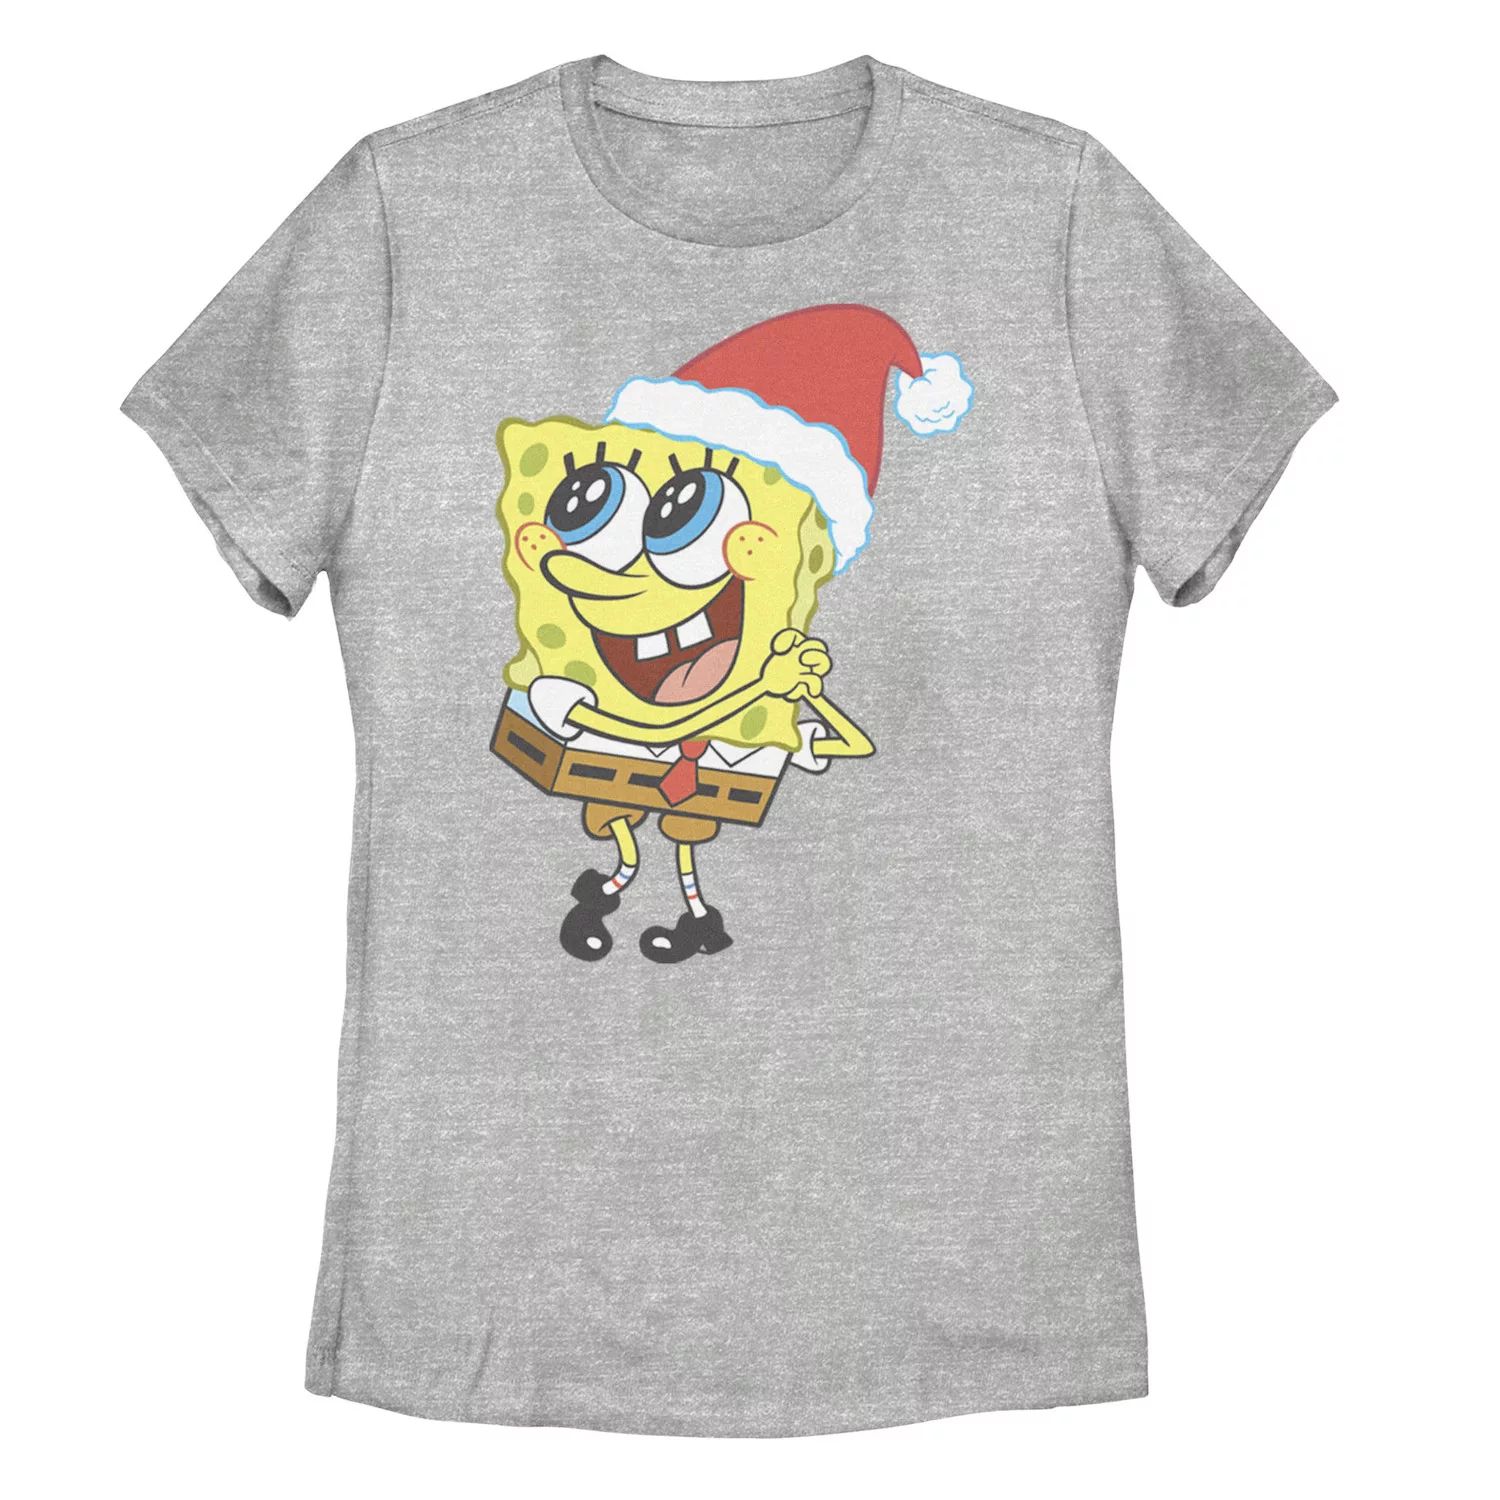 Детская футболка с рисунком «Губка Боб Квадратные Штаны» «Шляпа Санты» «Мечтаю о Рождестве» Licensed Character